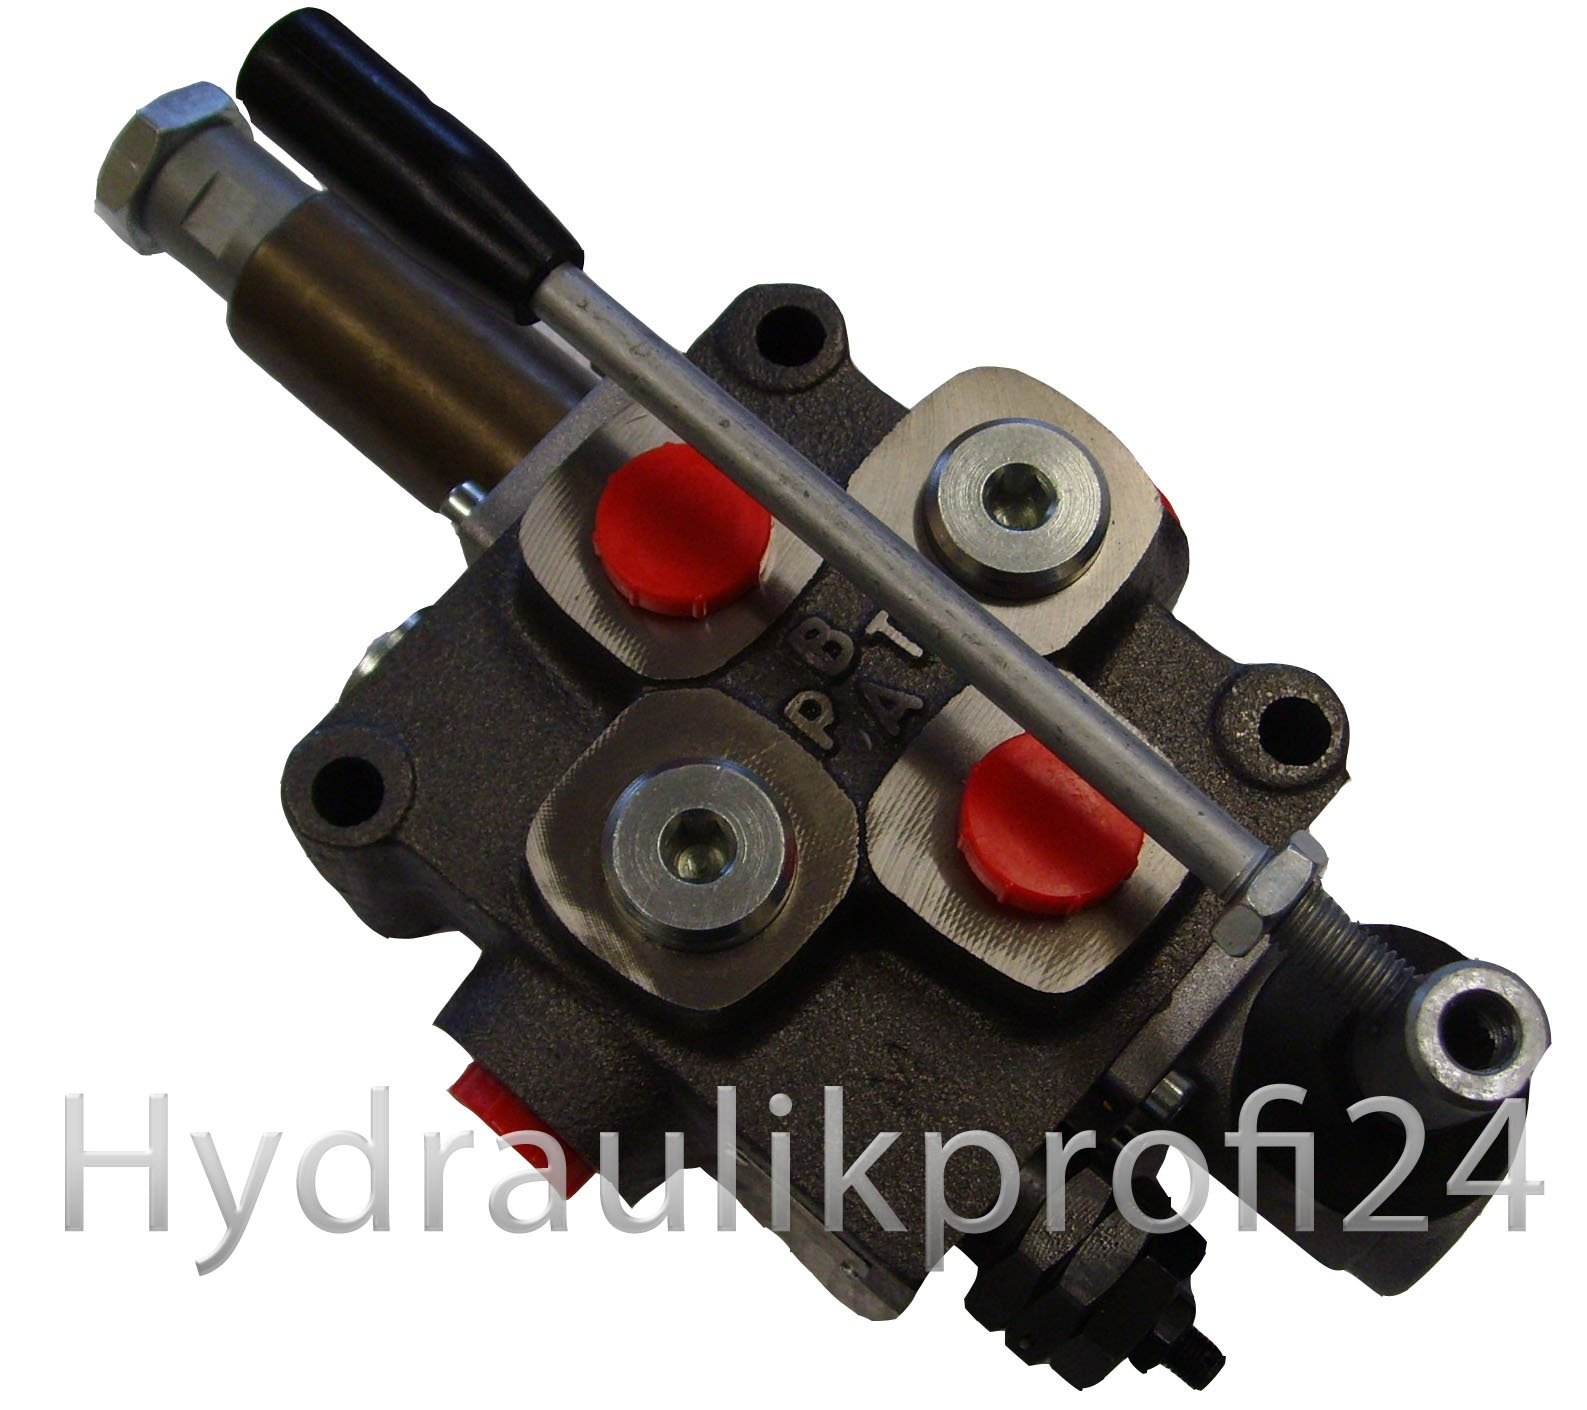 Hydraulikprofi24 - Hydraulikventil für Holzspalter und hyd. Pressen 70L/min  druckentriegelt klick out automatischer